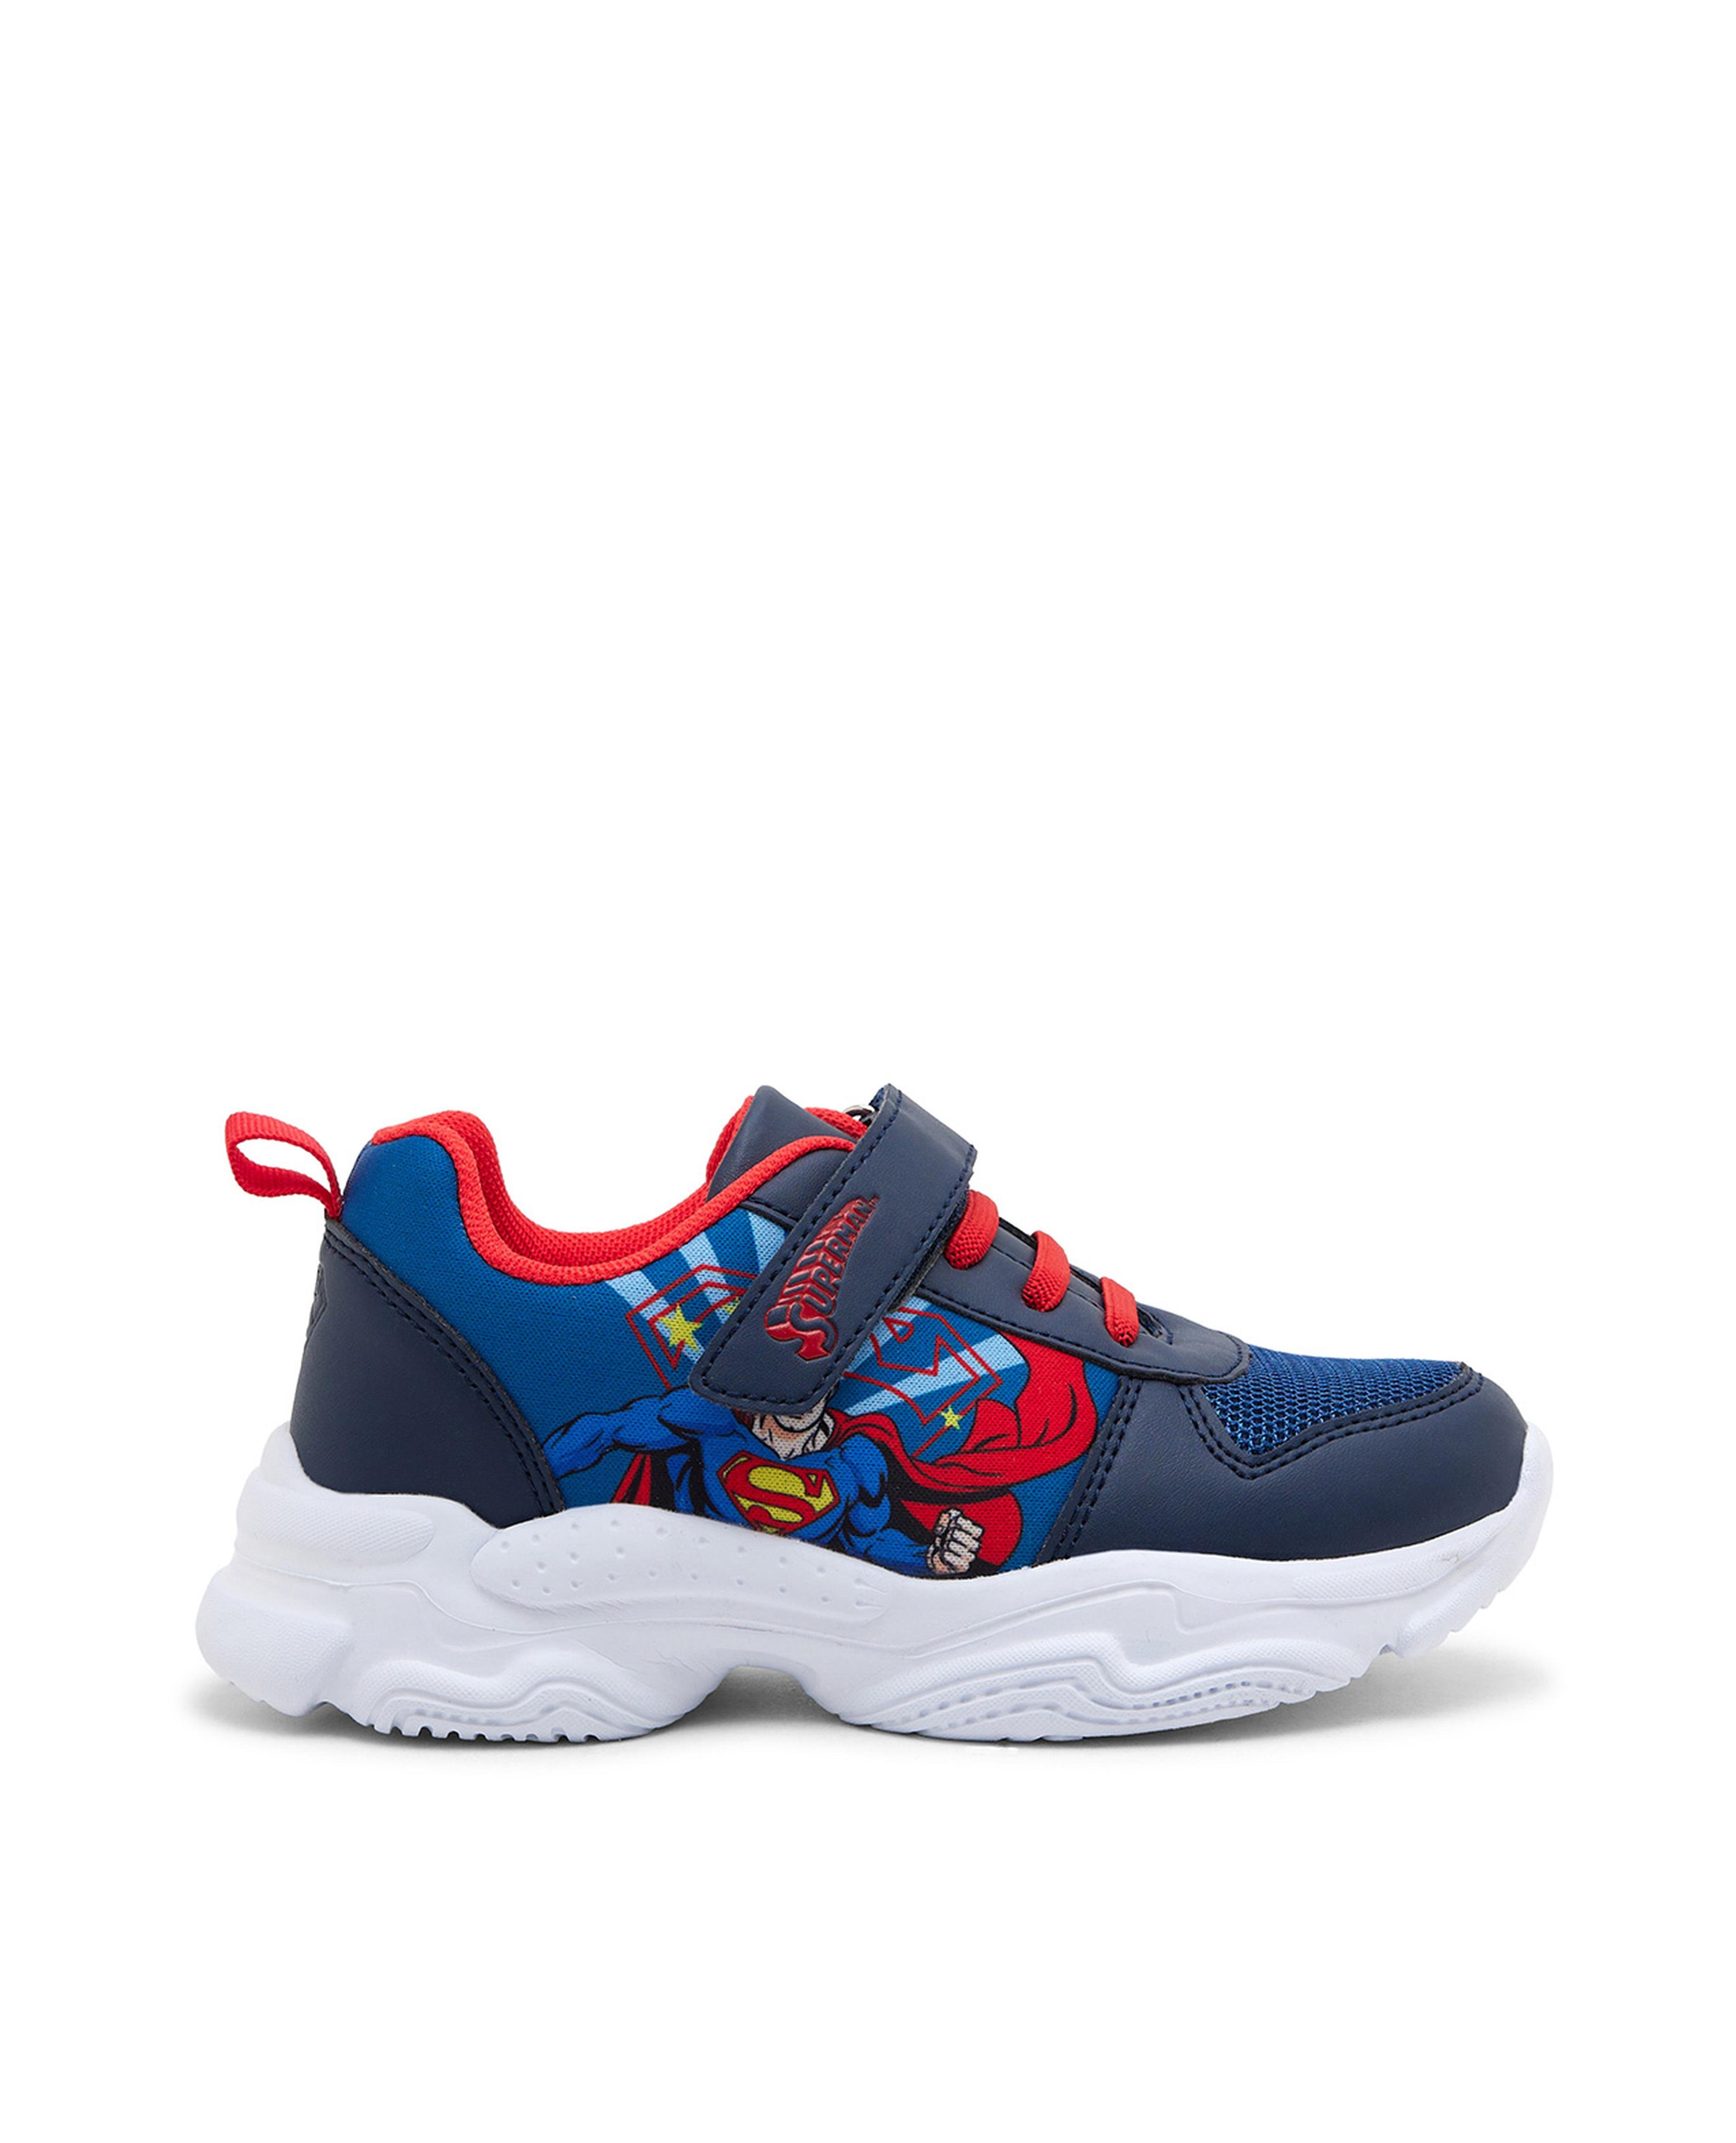 Superman Velcro Shoes